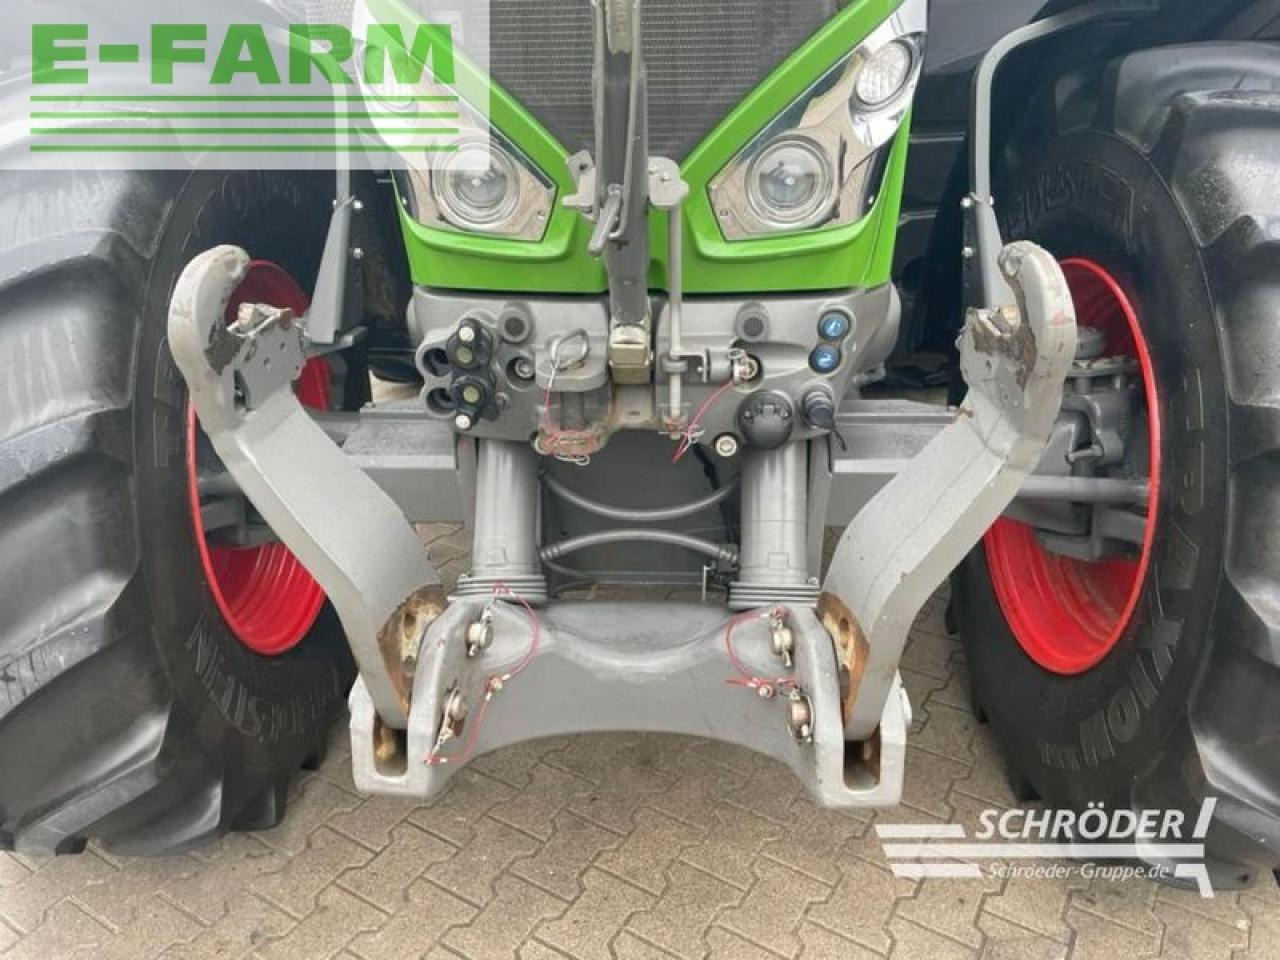 Farm tractor Fendt 828 s4 profi plus: picture 11